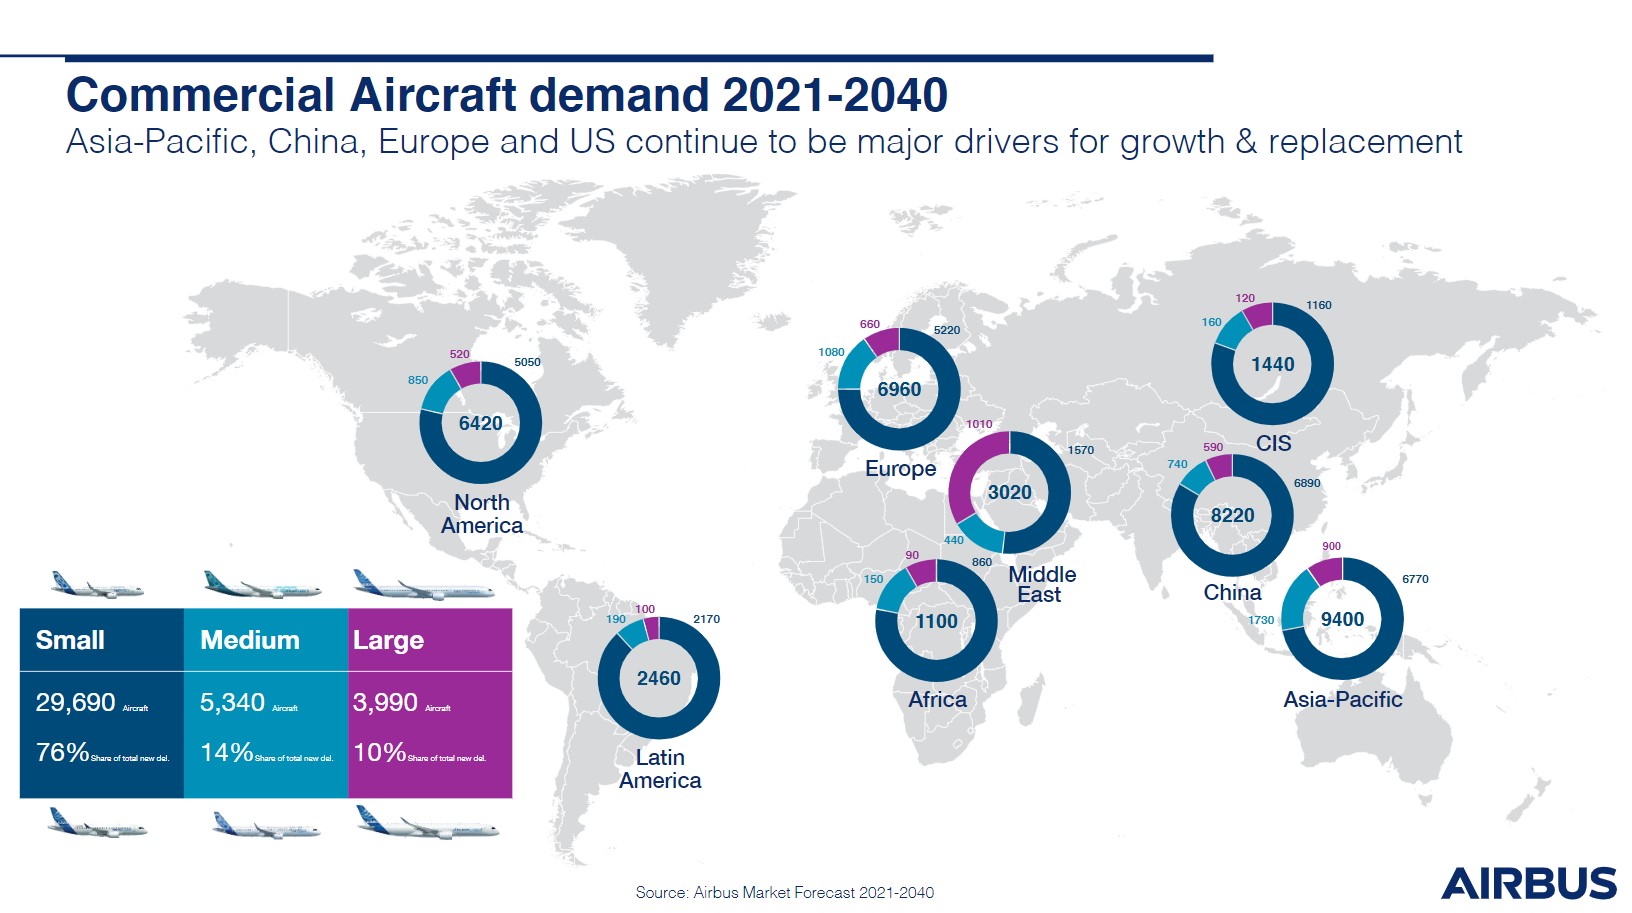 Les projections de demande d'appareils dans le monde d'ici 2040